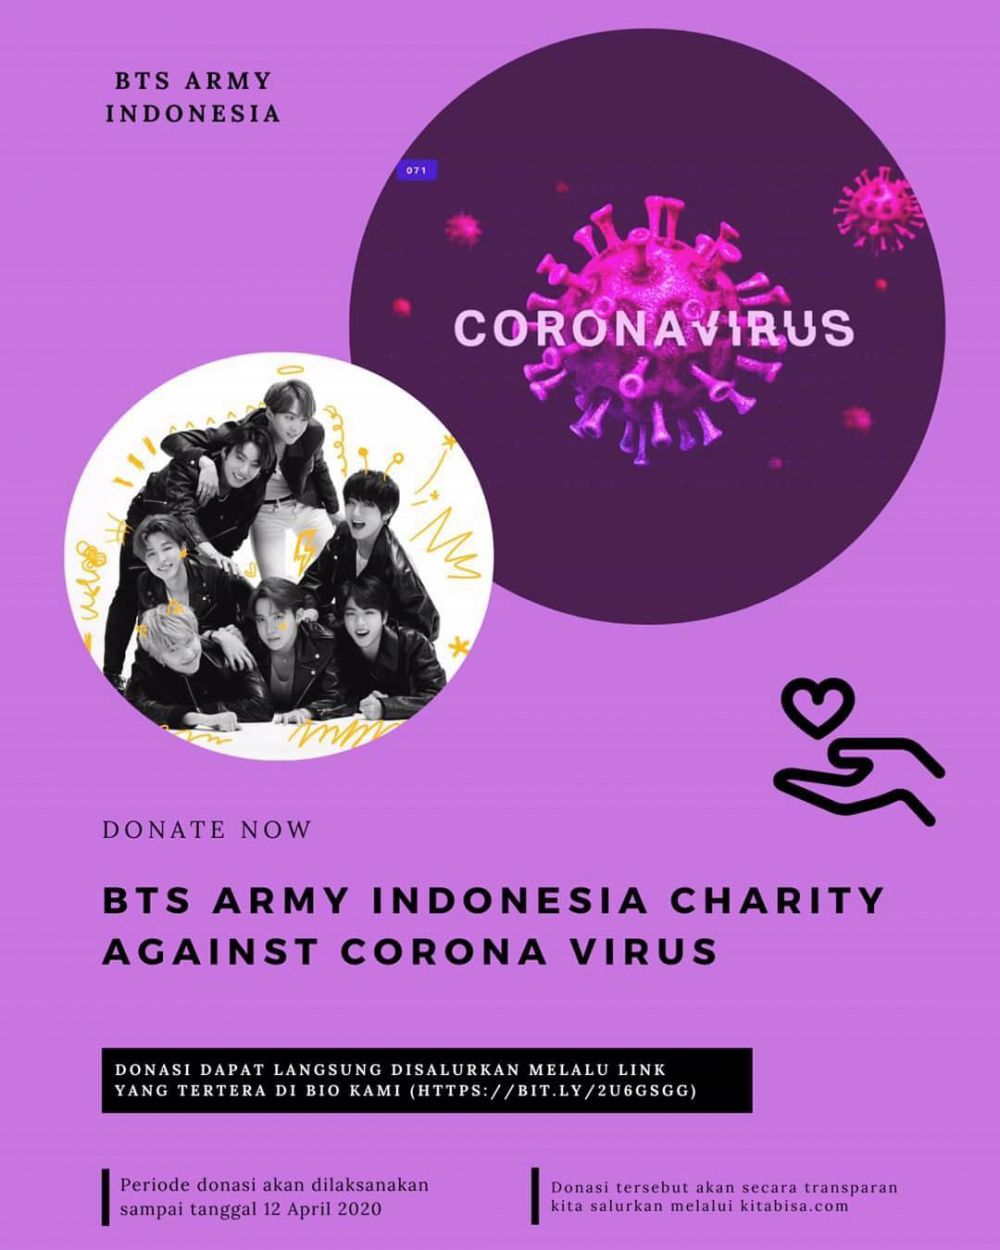 Cegah corona di Indonesia, fans BTS galang dana hingga Rp 235 juta